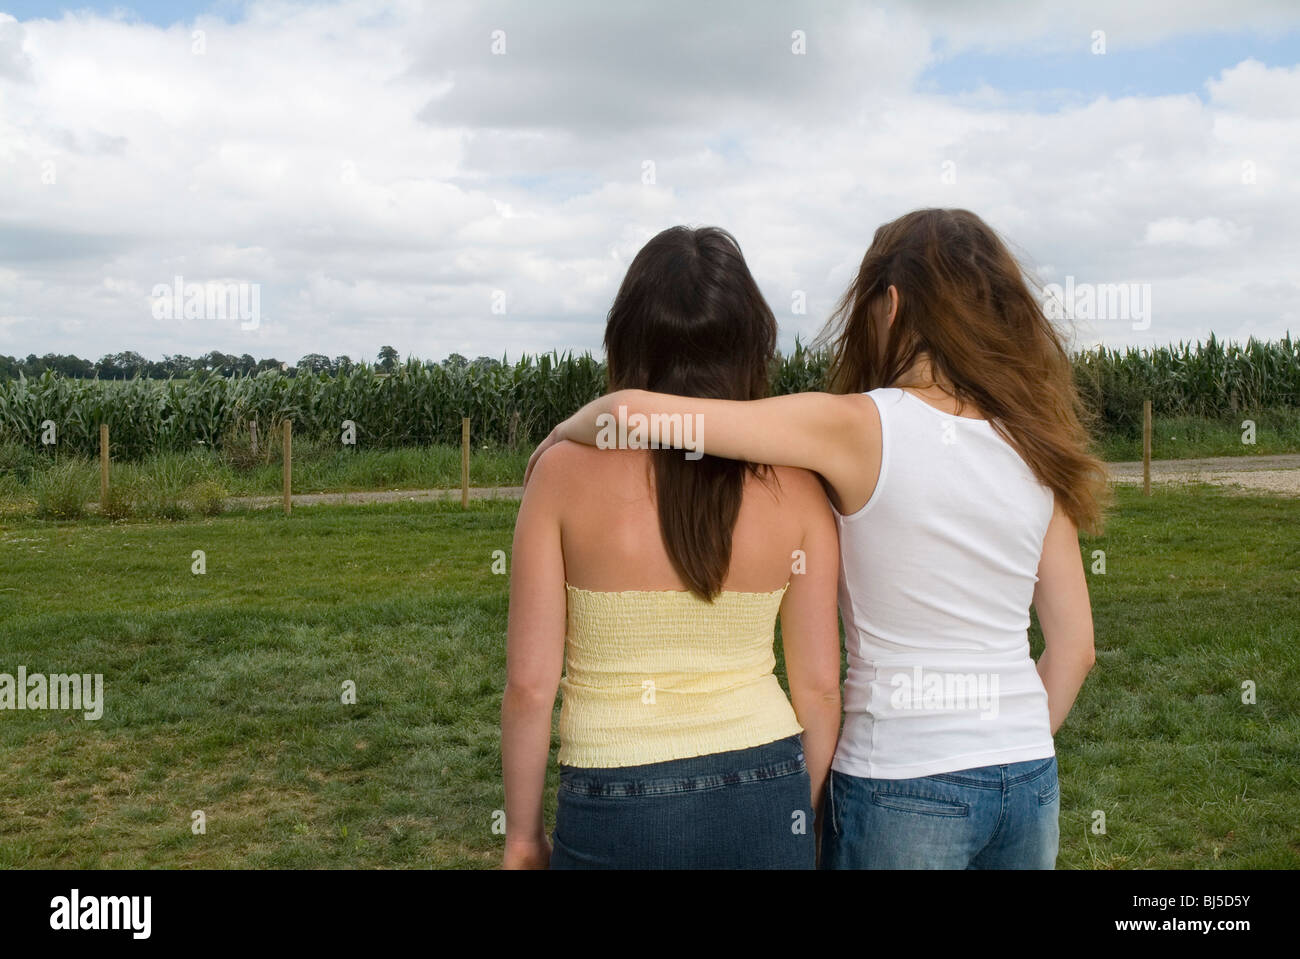 Landschaft, bewölkt, Freundschaft, Mädchen, Solidarität, Rücken, teilen, teilen, Feld Stockfoto